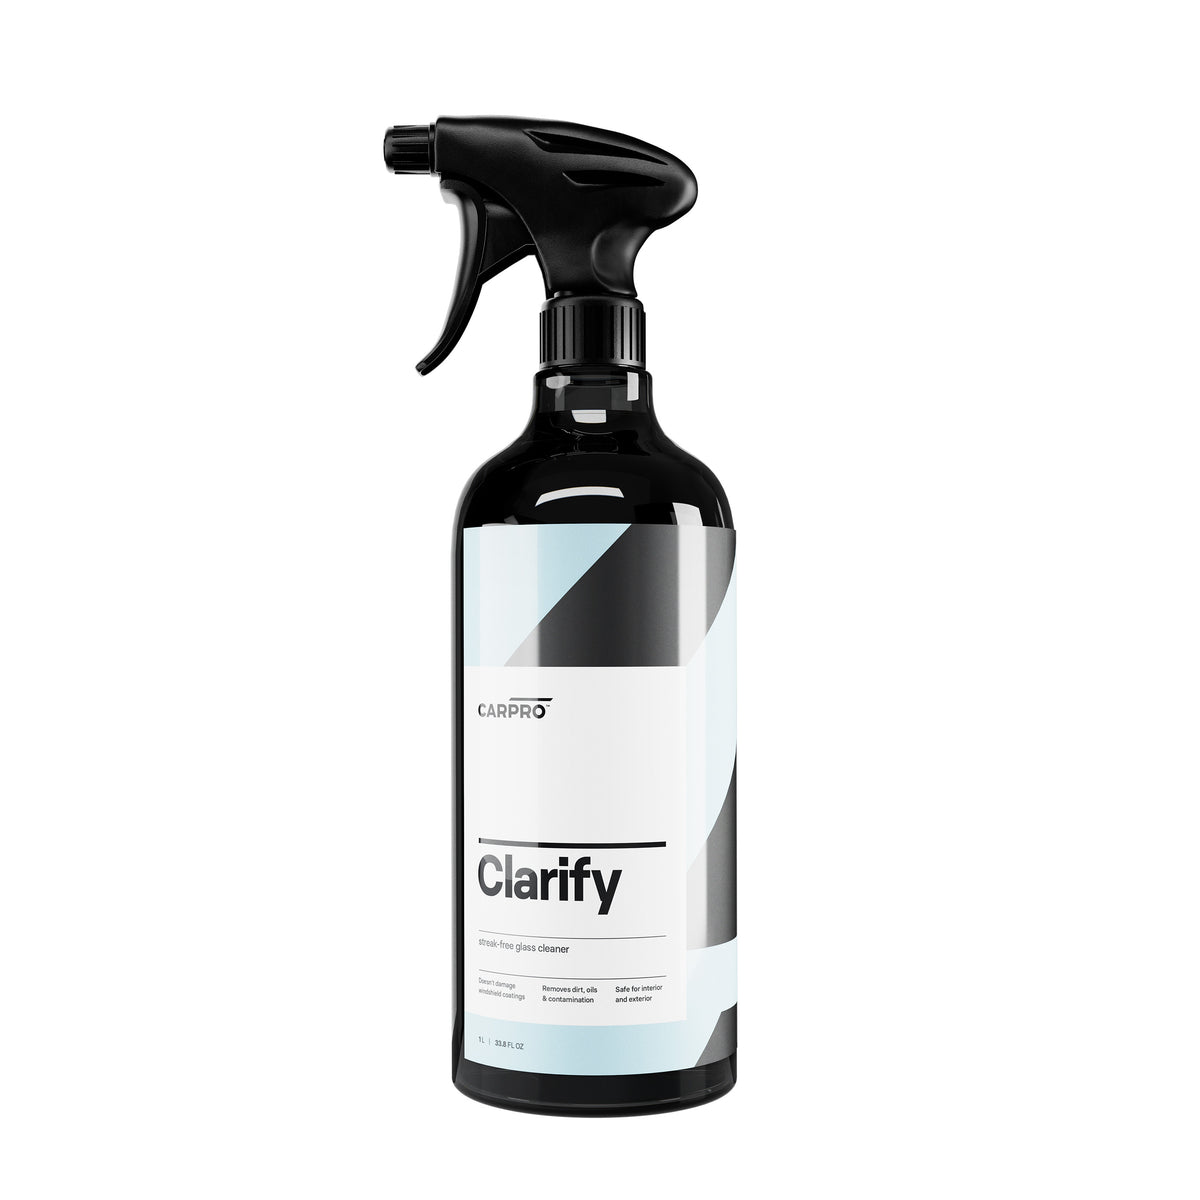  Flacone spray di CARPRO Clarify, un detergente avanzato per vetri che rimuove sporco e macchie senza lasciare aloni, garantendo una visibilità cristallina e una pulizia facile e veloce.